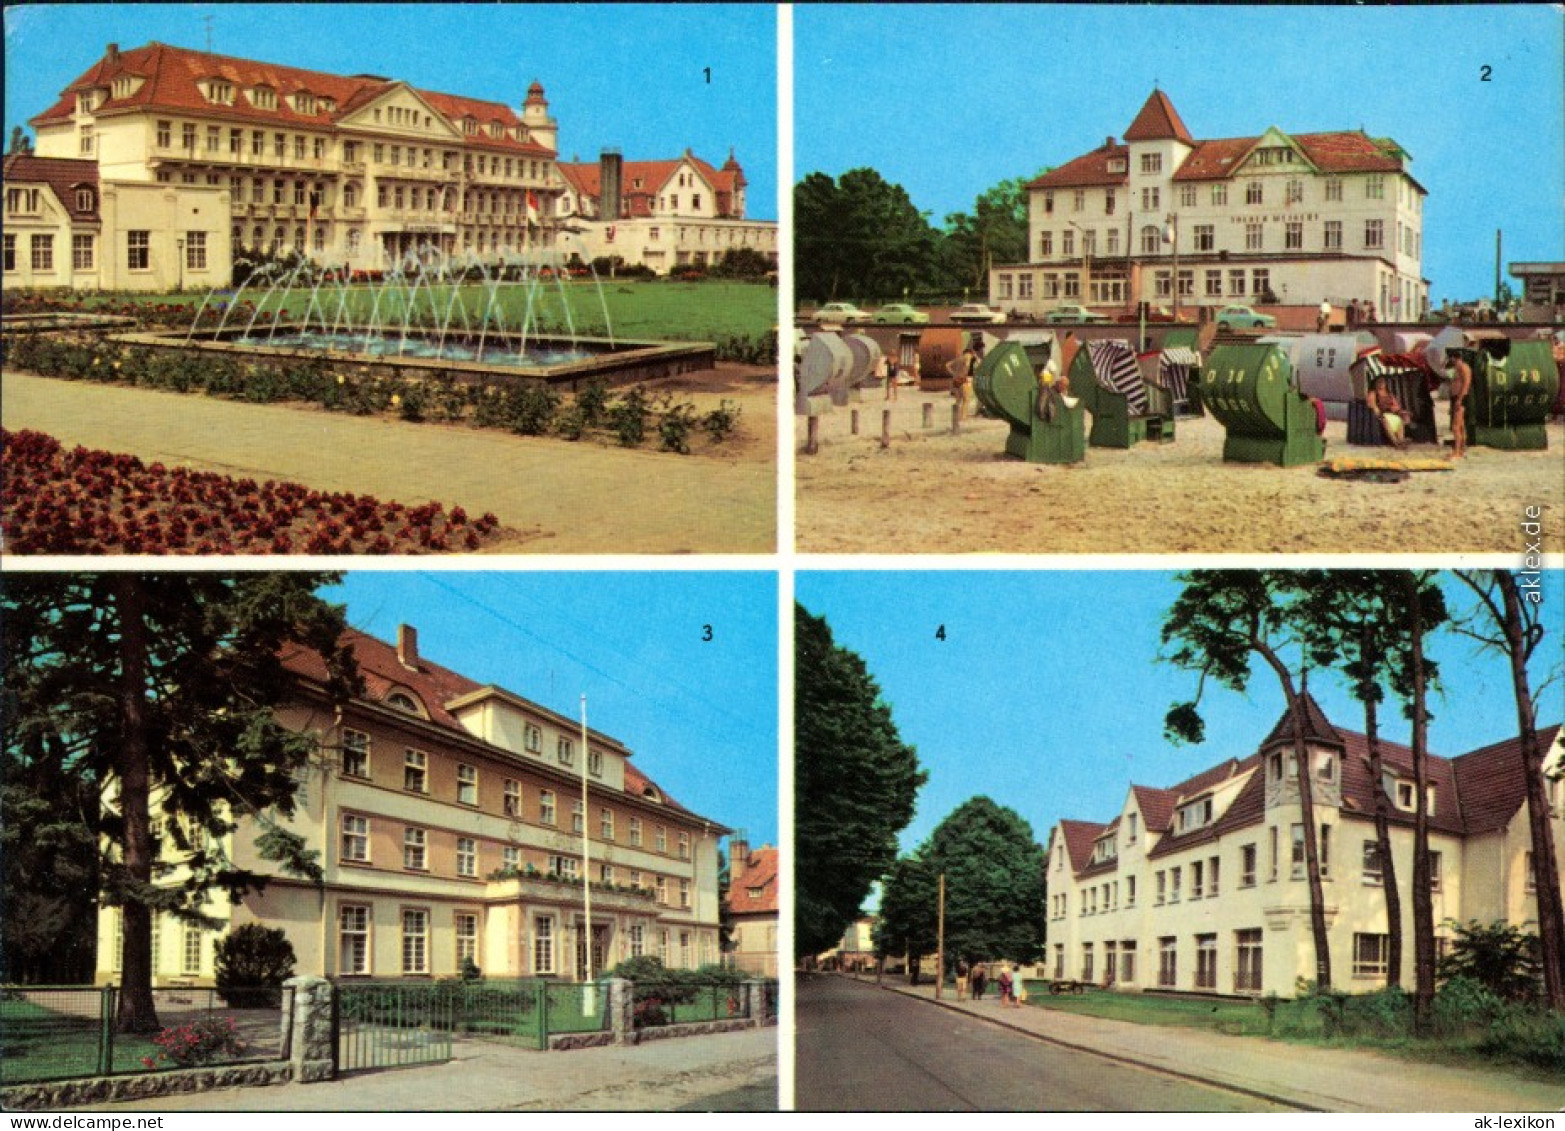 Kühlungsborn FDGB-Erholungsheim "Georgi Dimitroff", FDGB-Erholungsheim  1979 - Kuehlungsborn